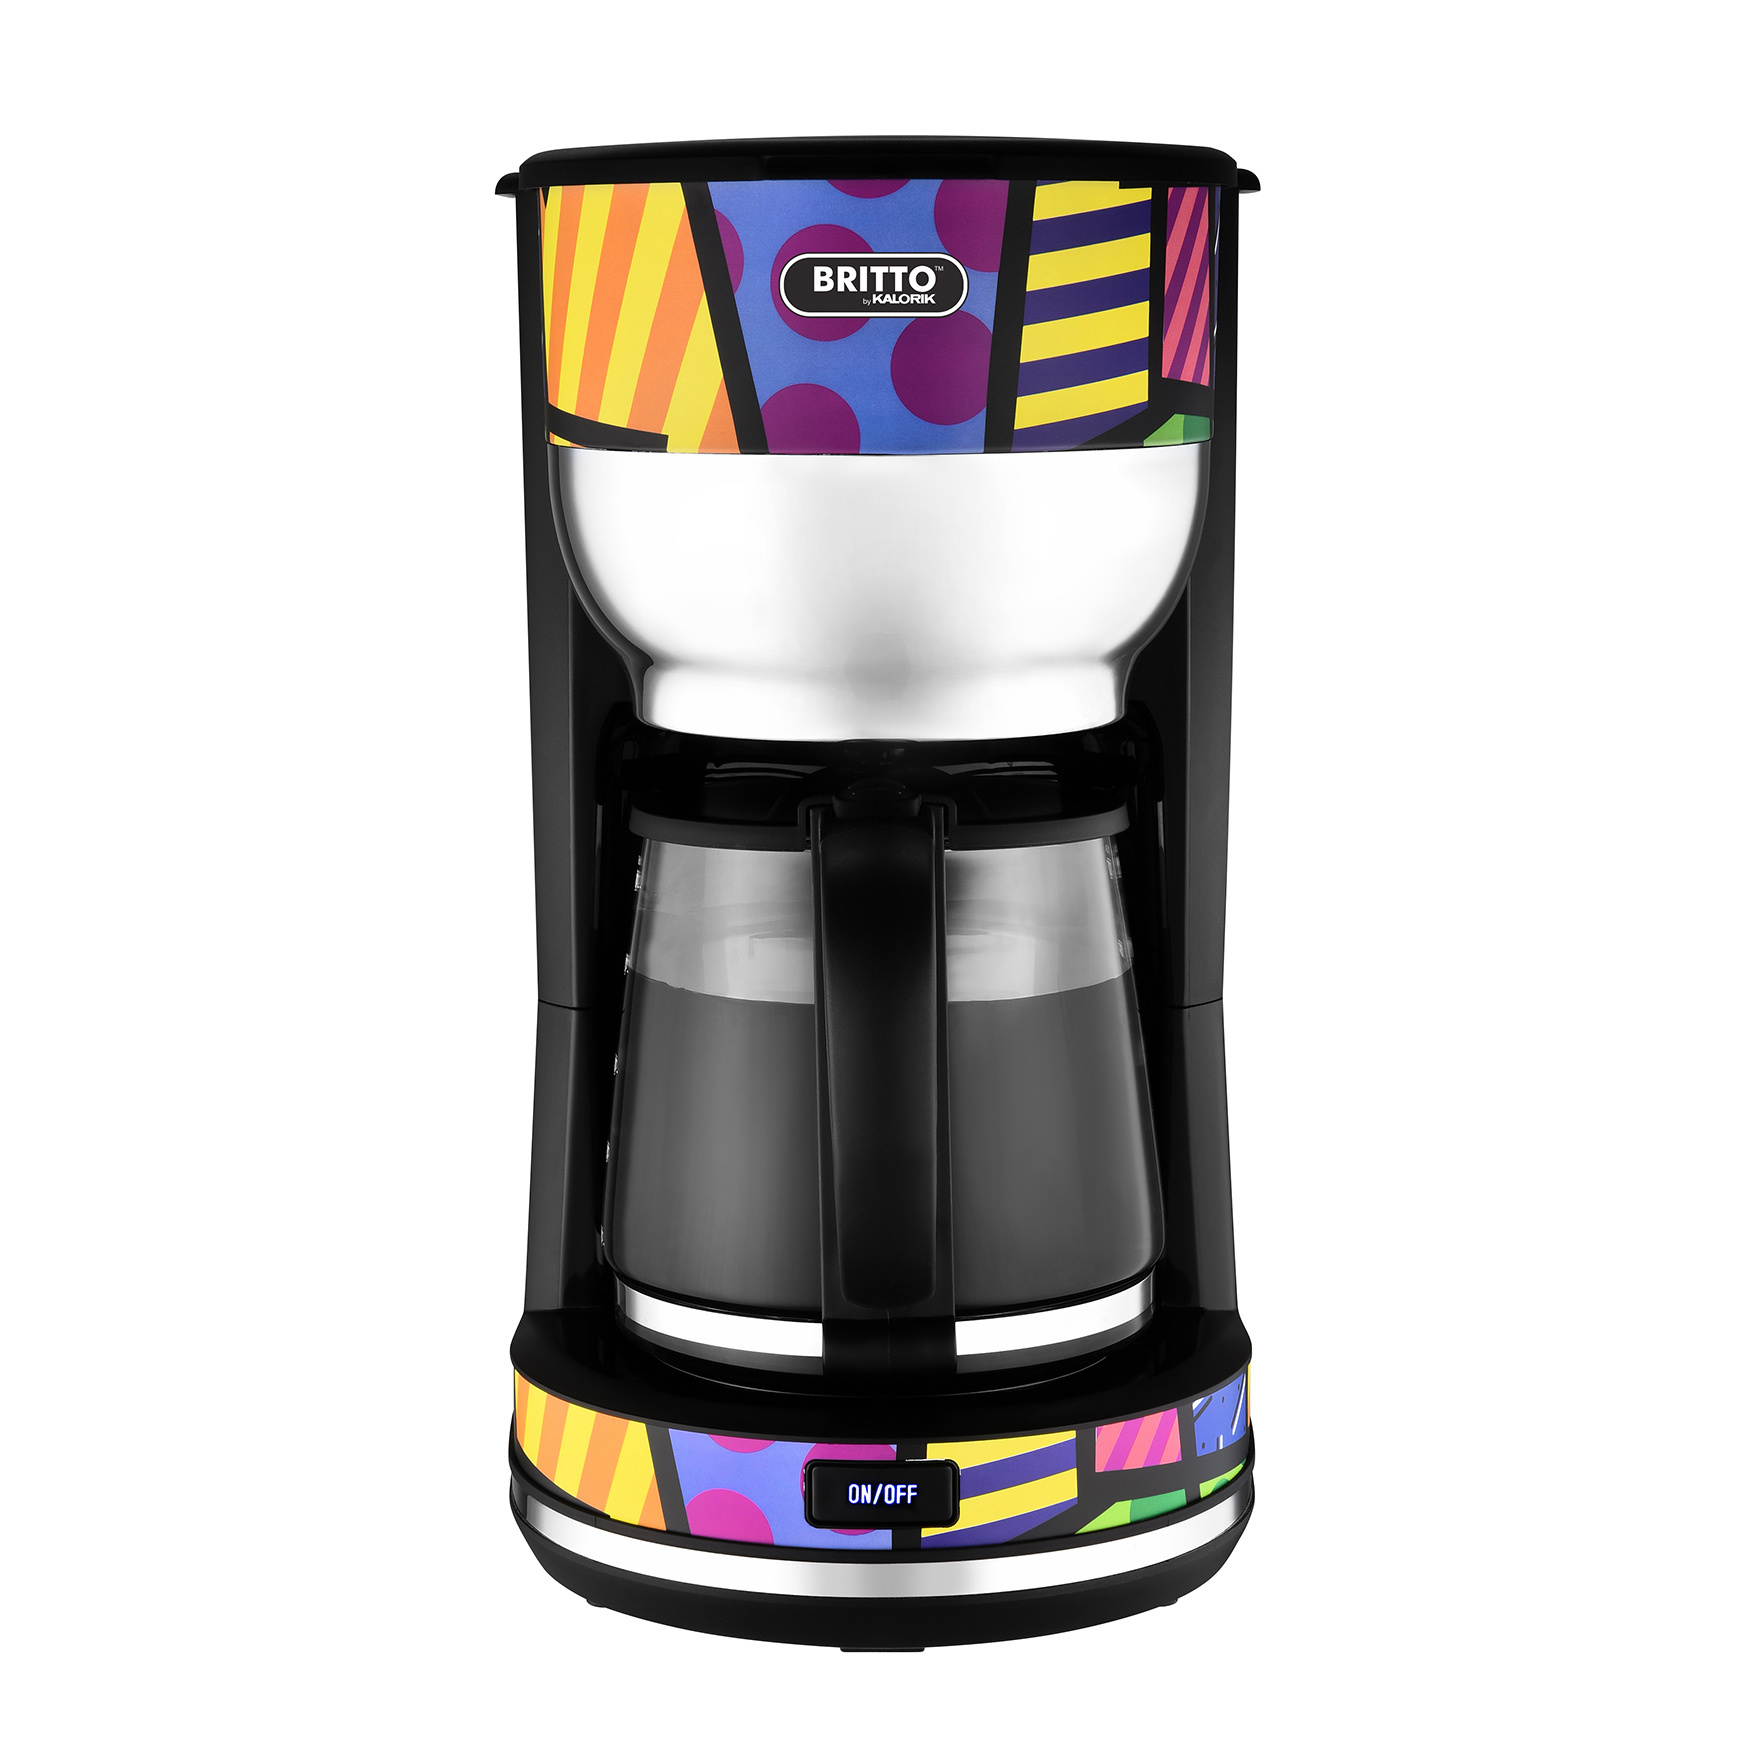 Kalorik by Britto 10-cup Coffee Maker, Multicolor Design, MULTI